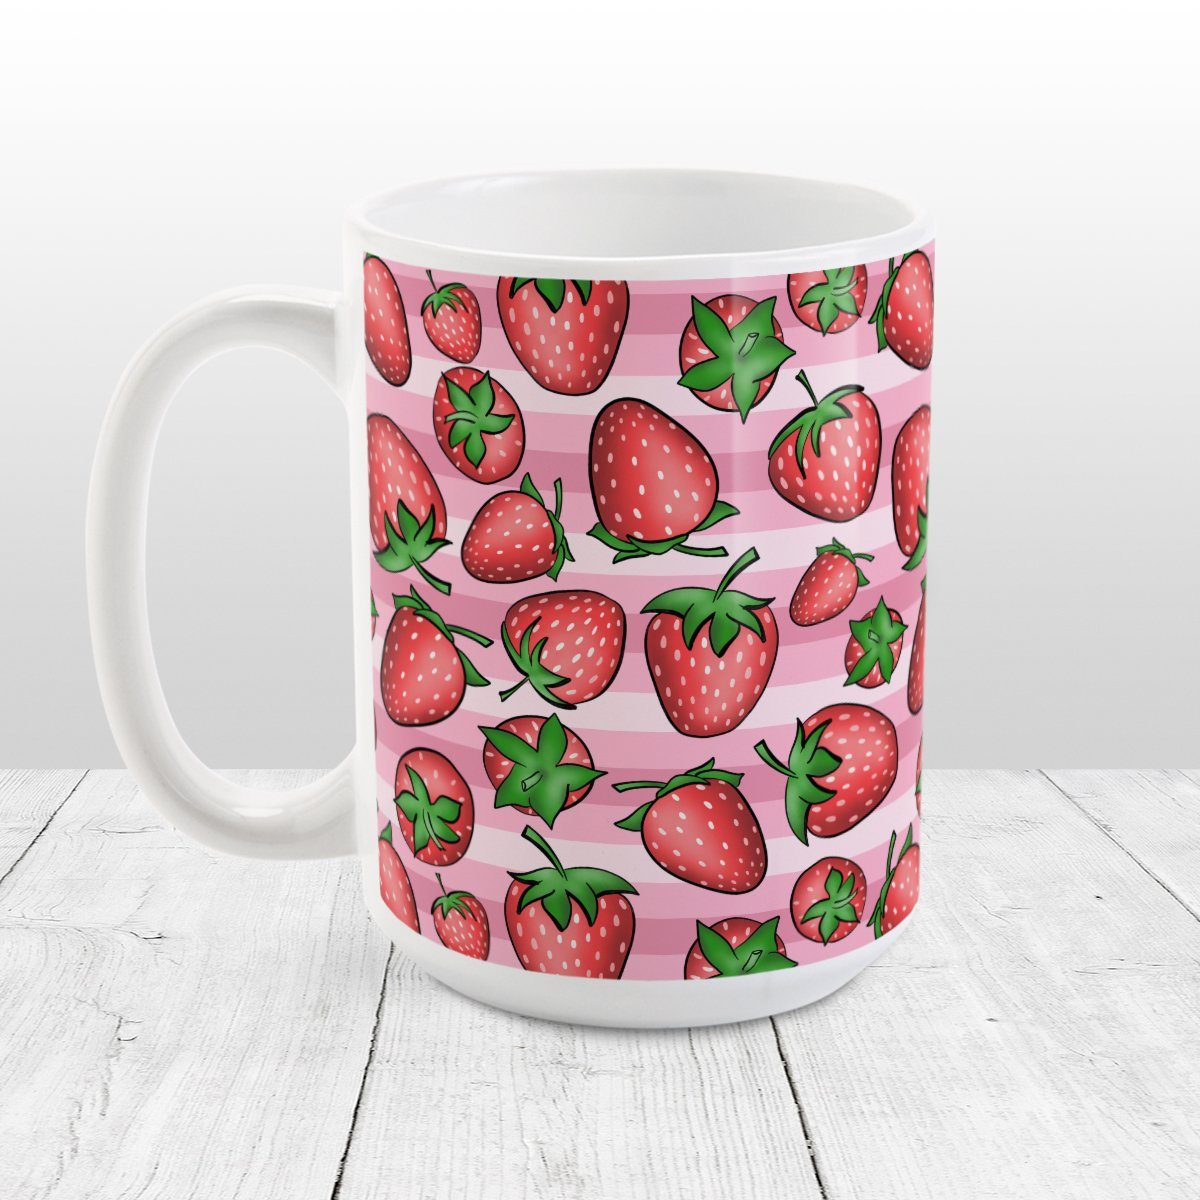 Strawberries on Pink Mug (15oz) at Amy's Coffee Mugs